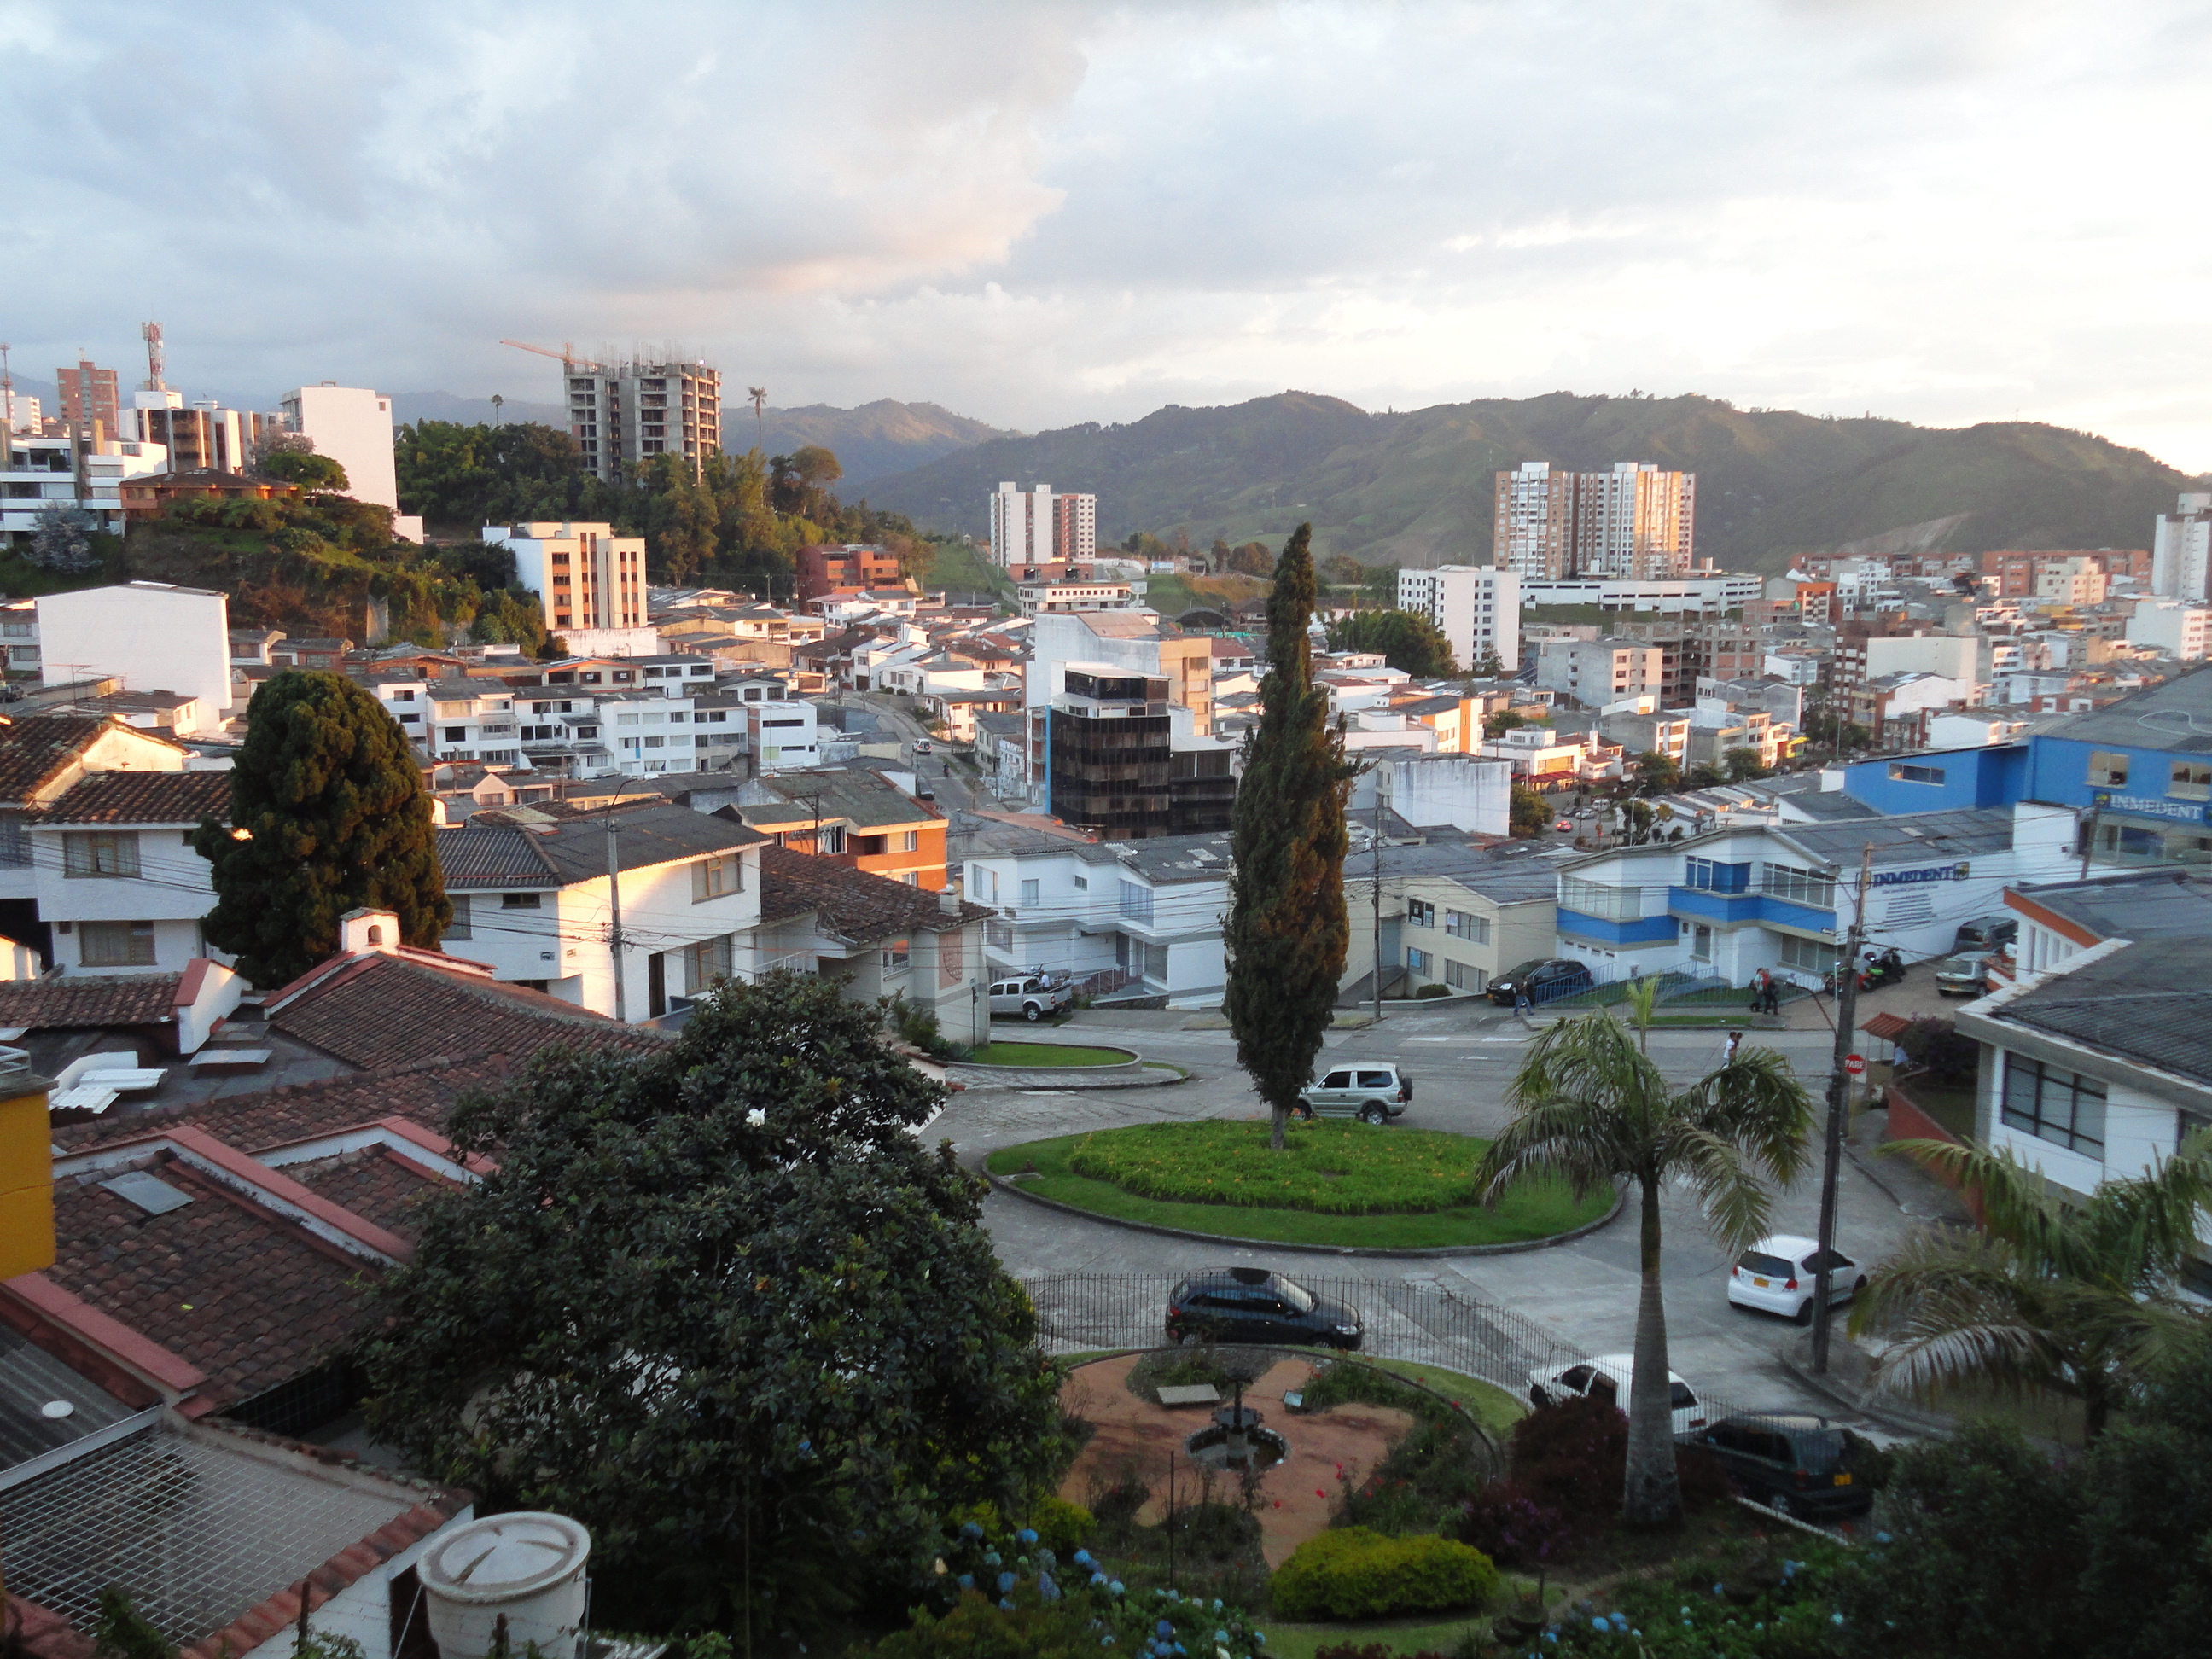 Imagen 3. Vista del Barrio Palermo, Manizales. Fuente J.W.S.R